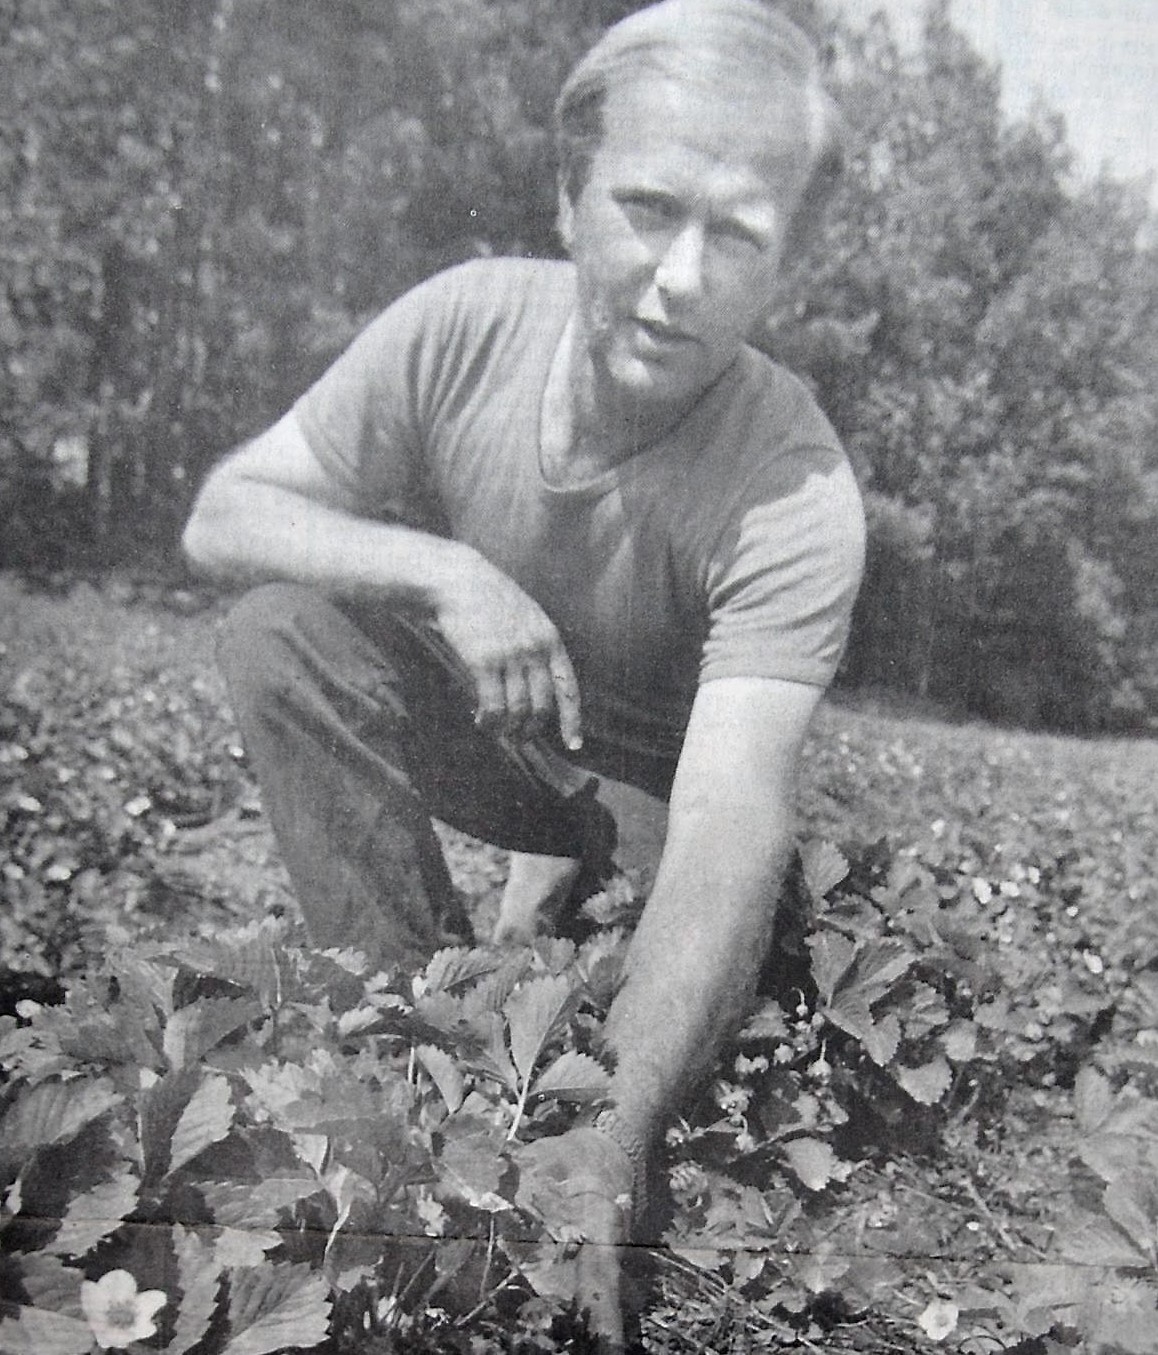 Han slog till i år igen, Hans Torstensson i Ullstorp utanför Vinslöv, med att vara först med jordgubbarna.
Arkiv: Bildbyrån